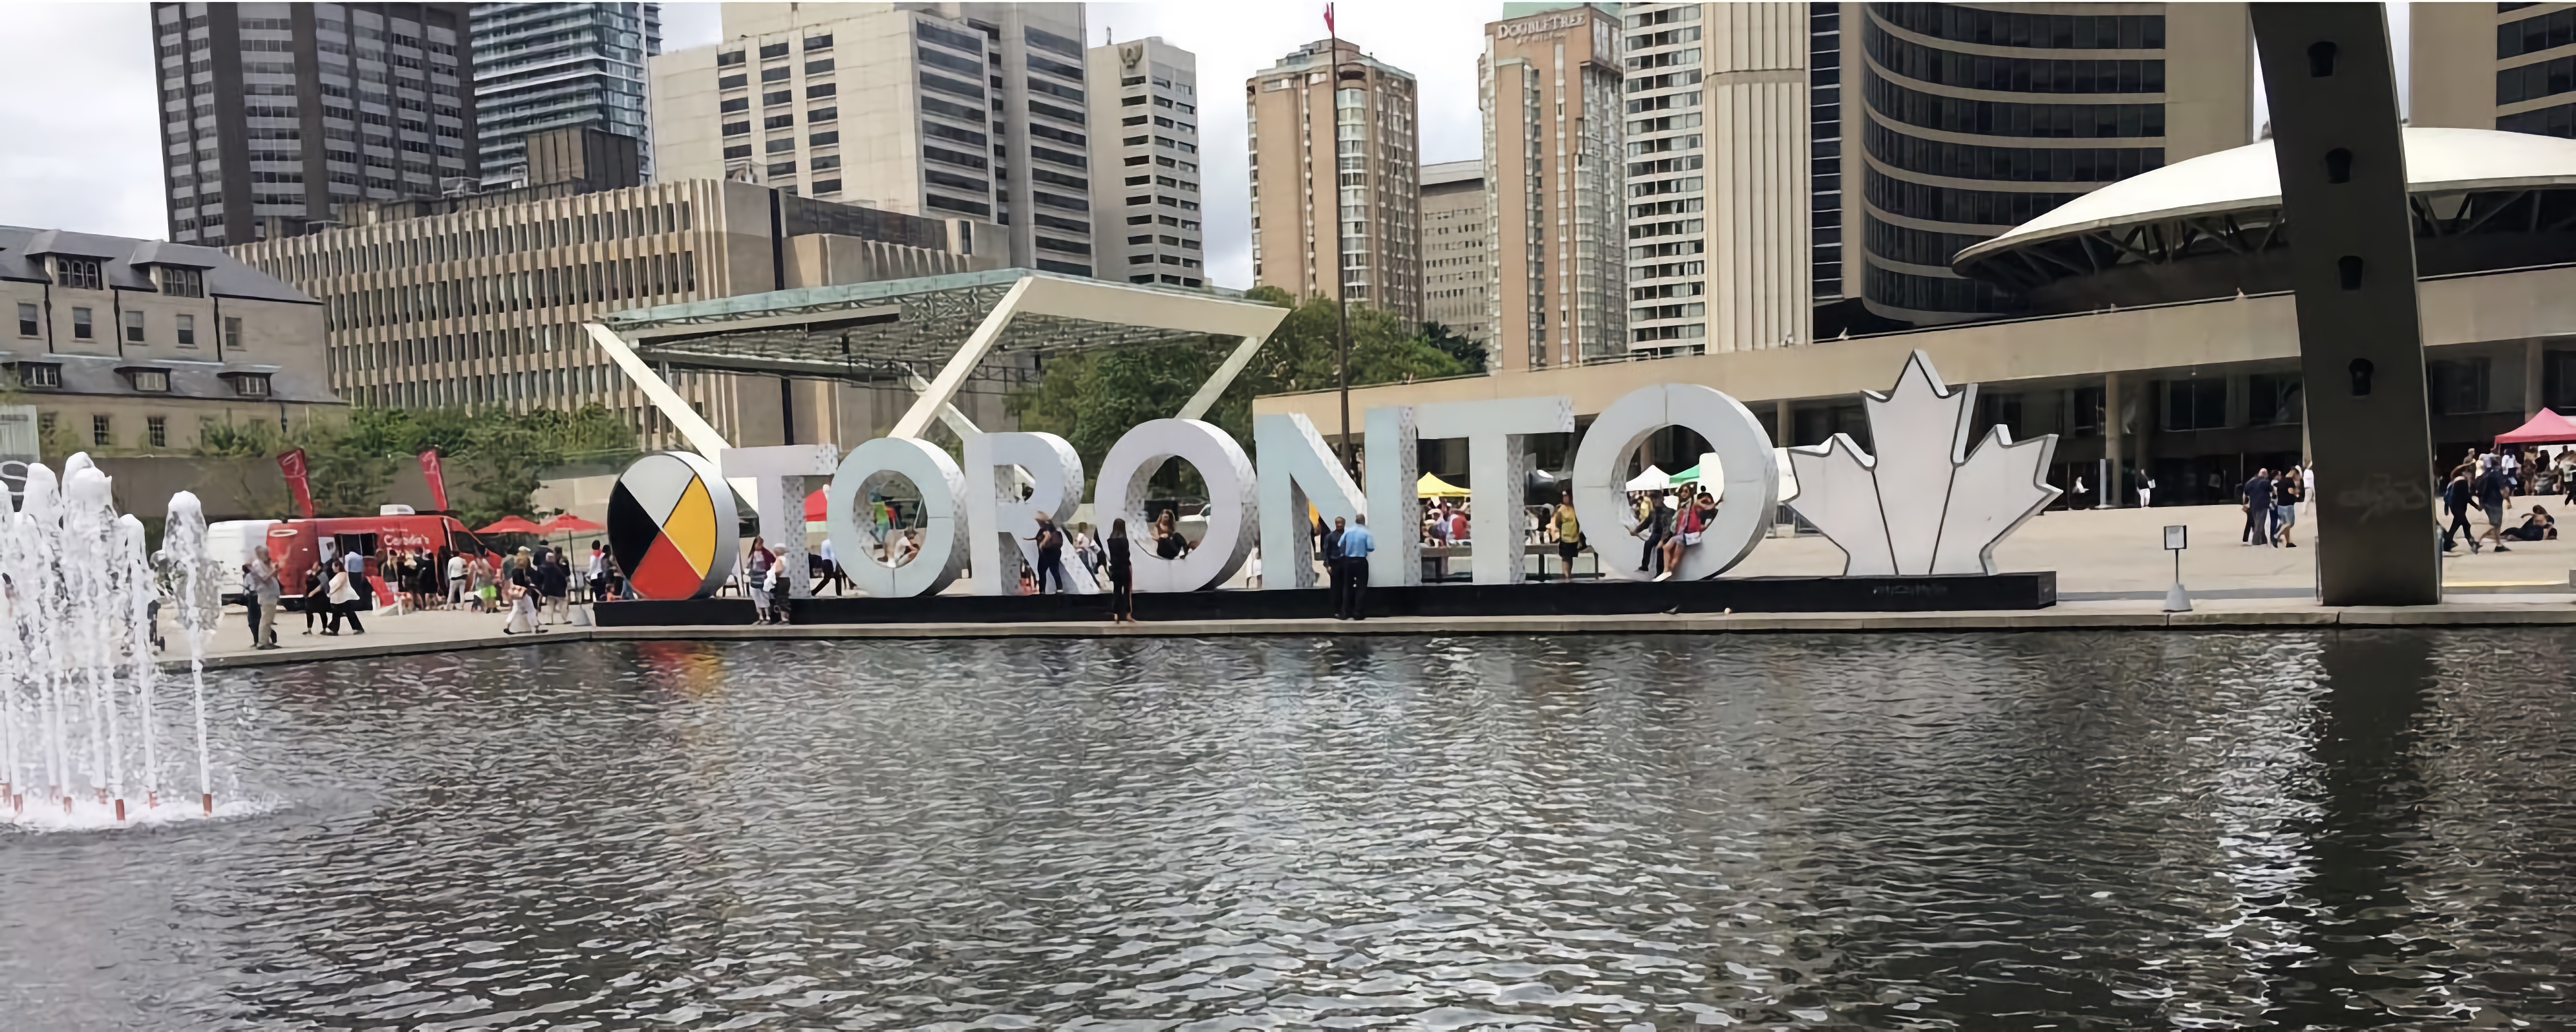 3D Toronto sign